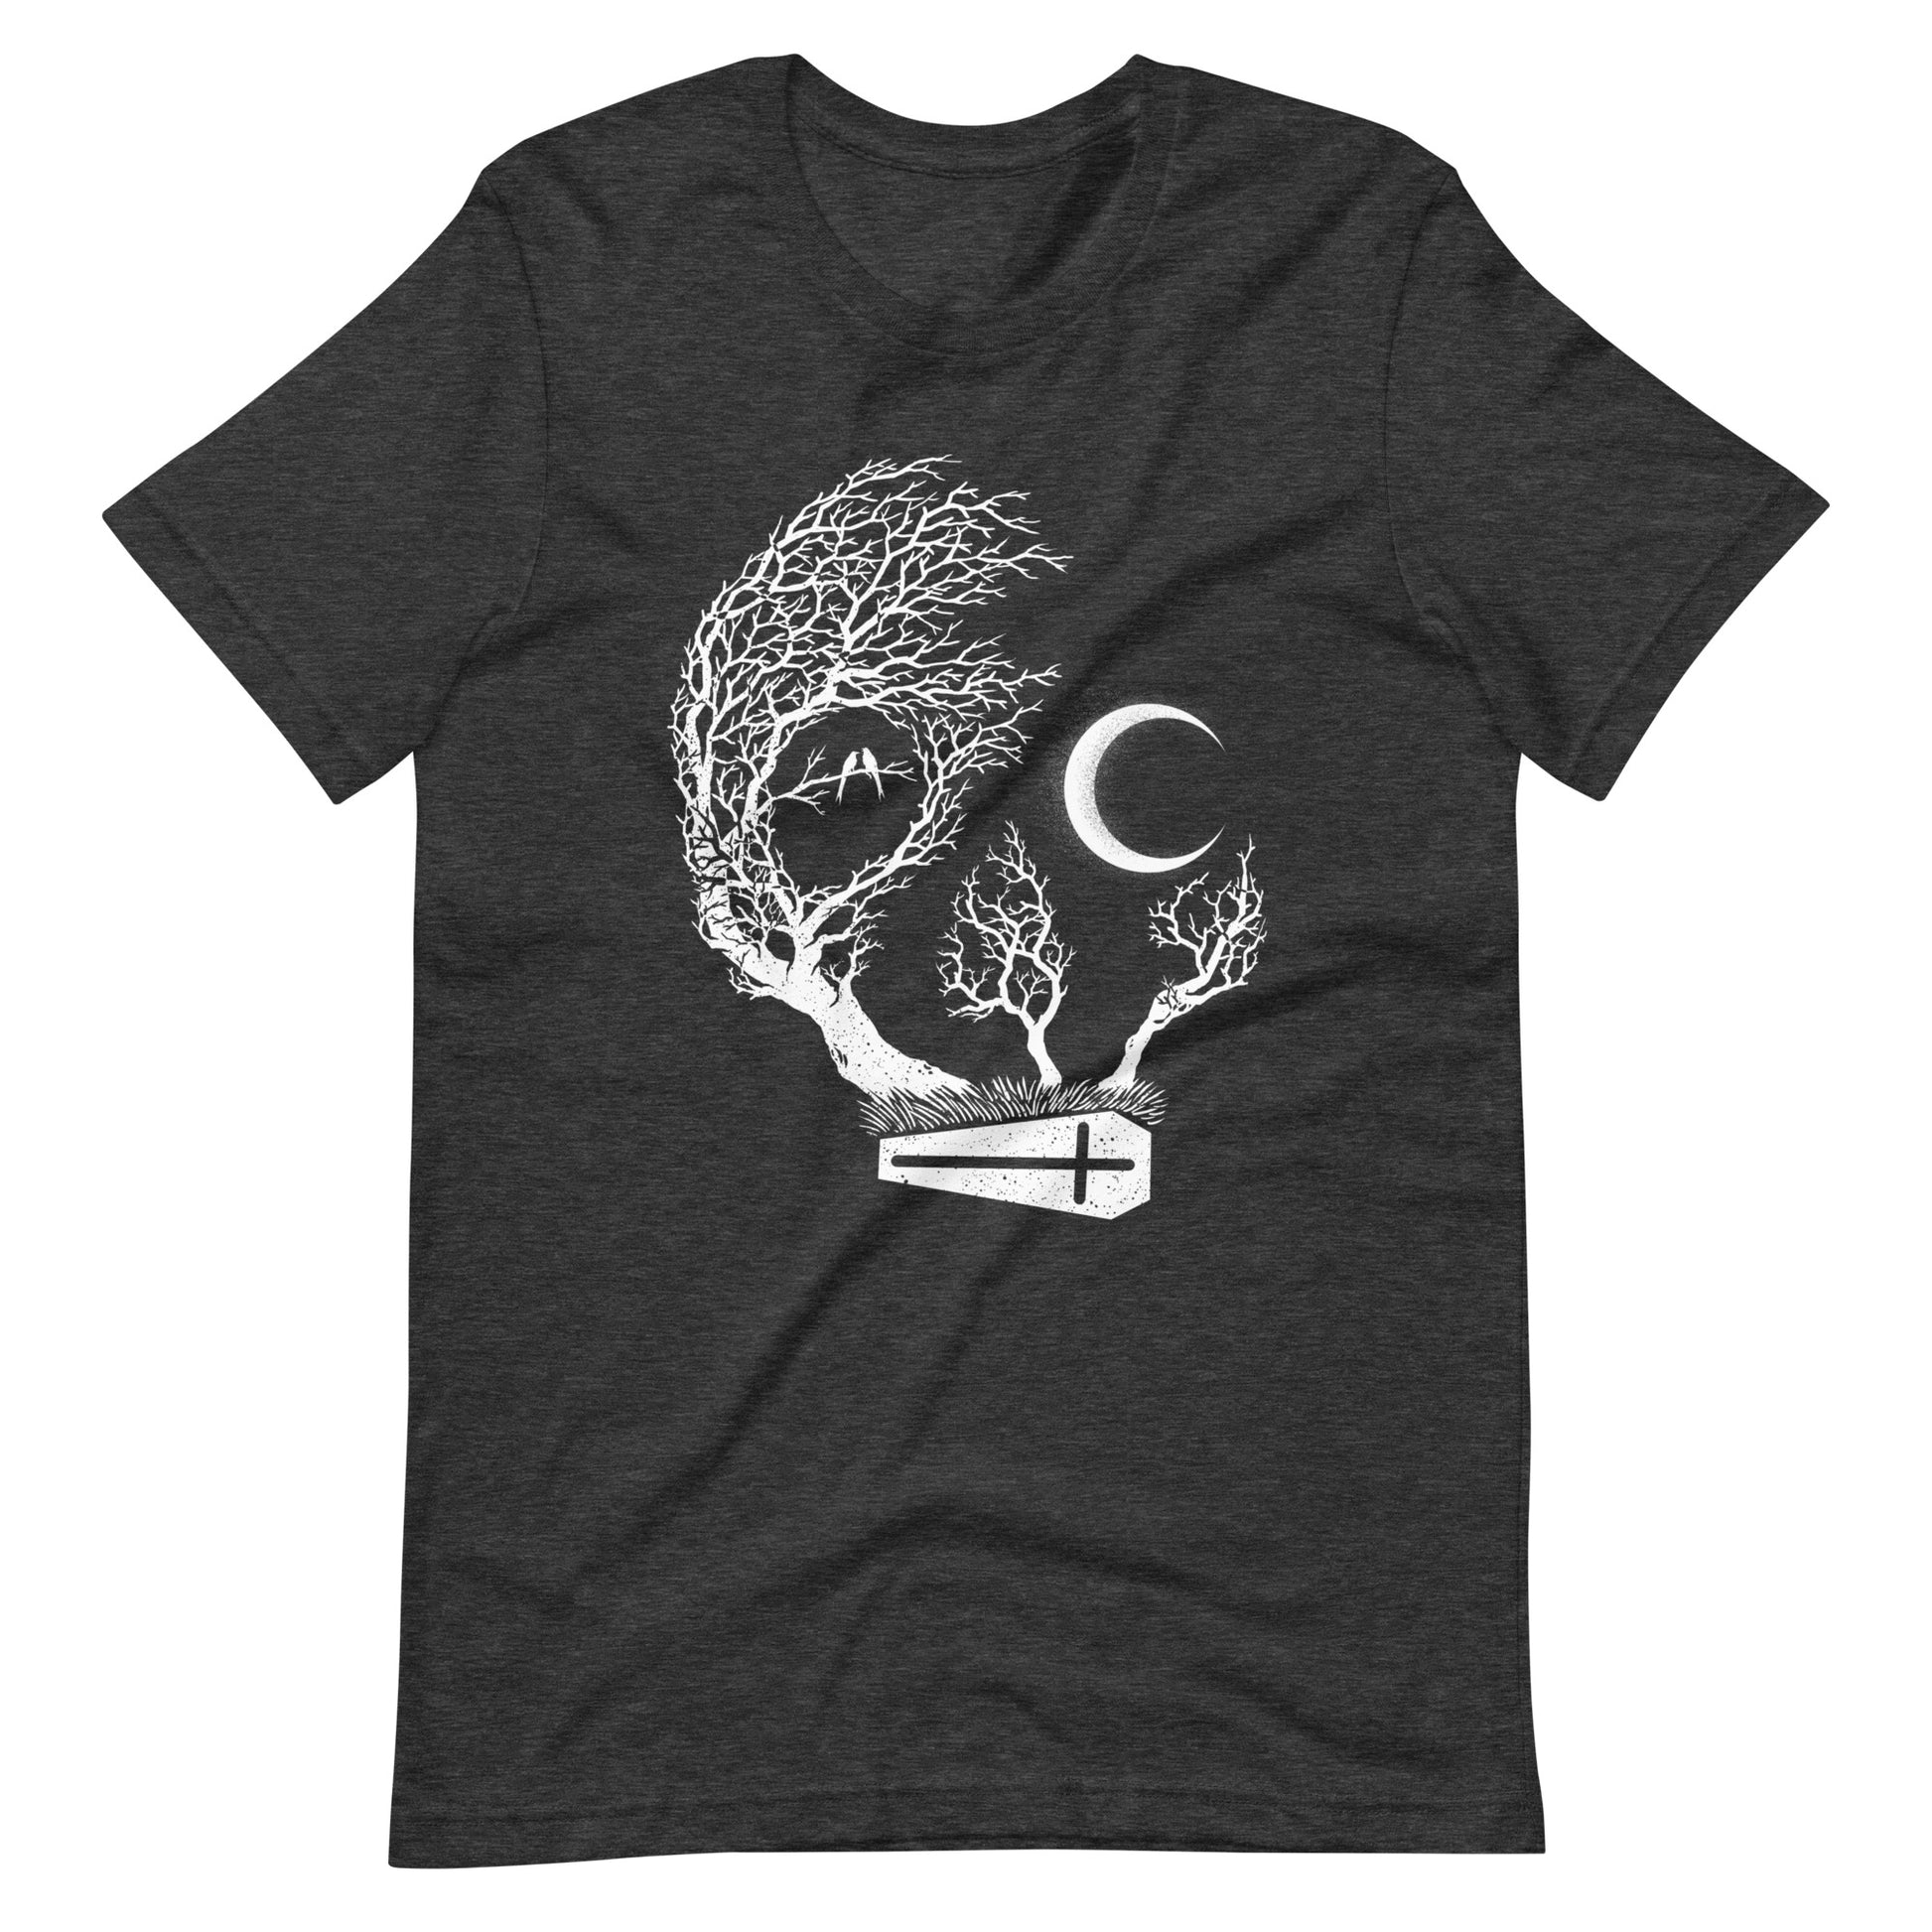 Friday Night Death - Men's t-shirt - Dark Grey Heather Front